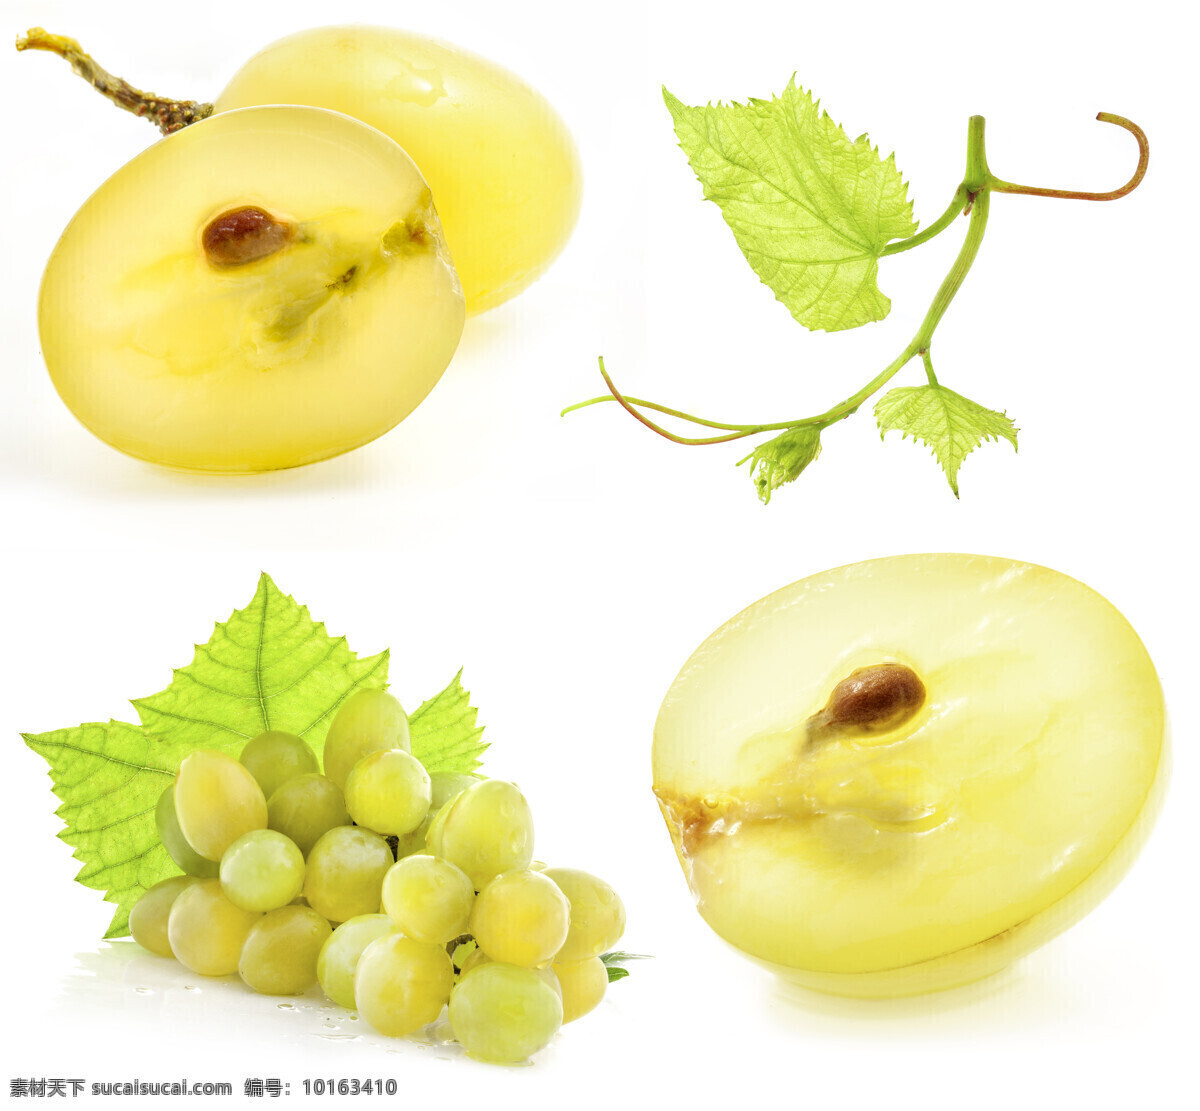 新鲜 葡萄 水果 新鲜水果 葡萄料 葡萄叶 成串的葡萄 水果摄影 蔬菜图片 餐饮美食